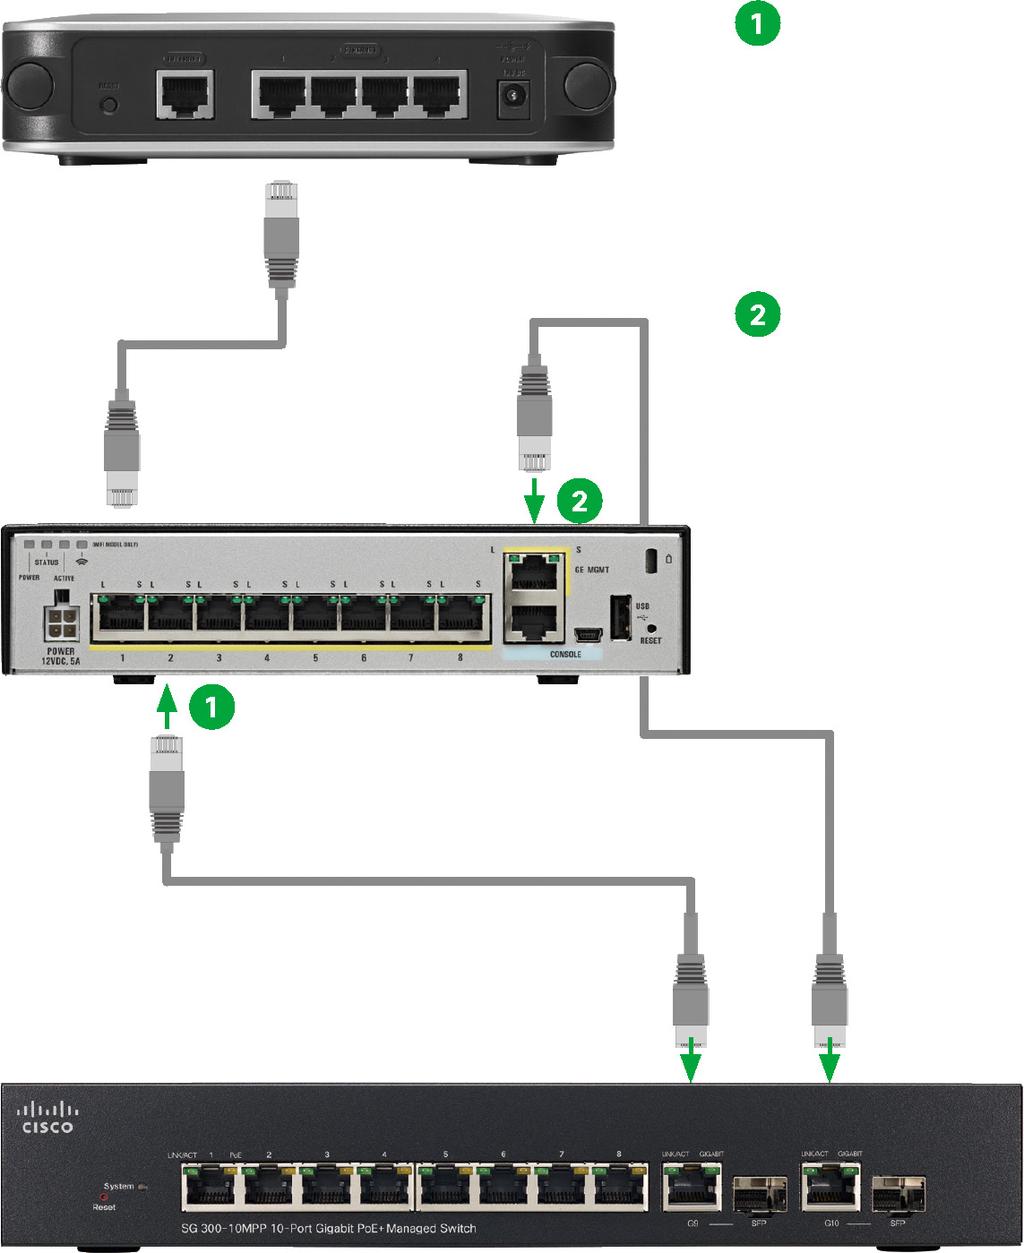 스위치에아무것도연결되어있지않은지, DHCP를사용할수있도록설정이되어있는지, 첫번째이더넷케이블이 ASA와 WAN 장치사이에여전히연결이되어있는지확인합니다.